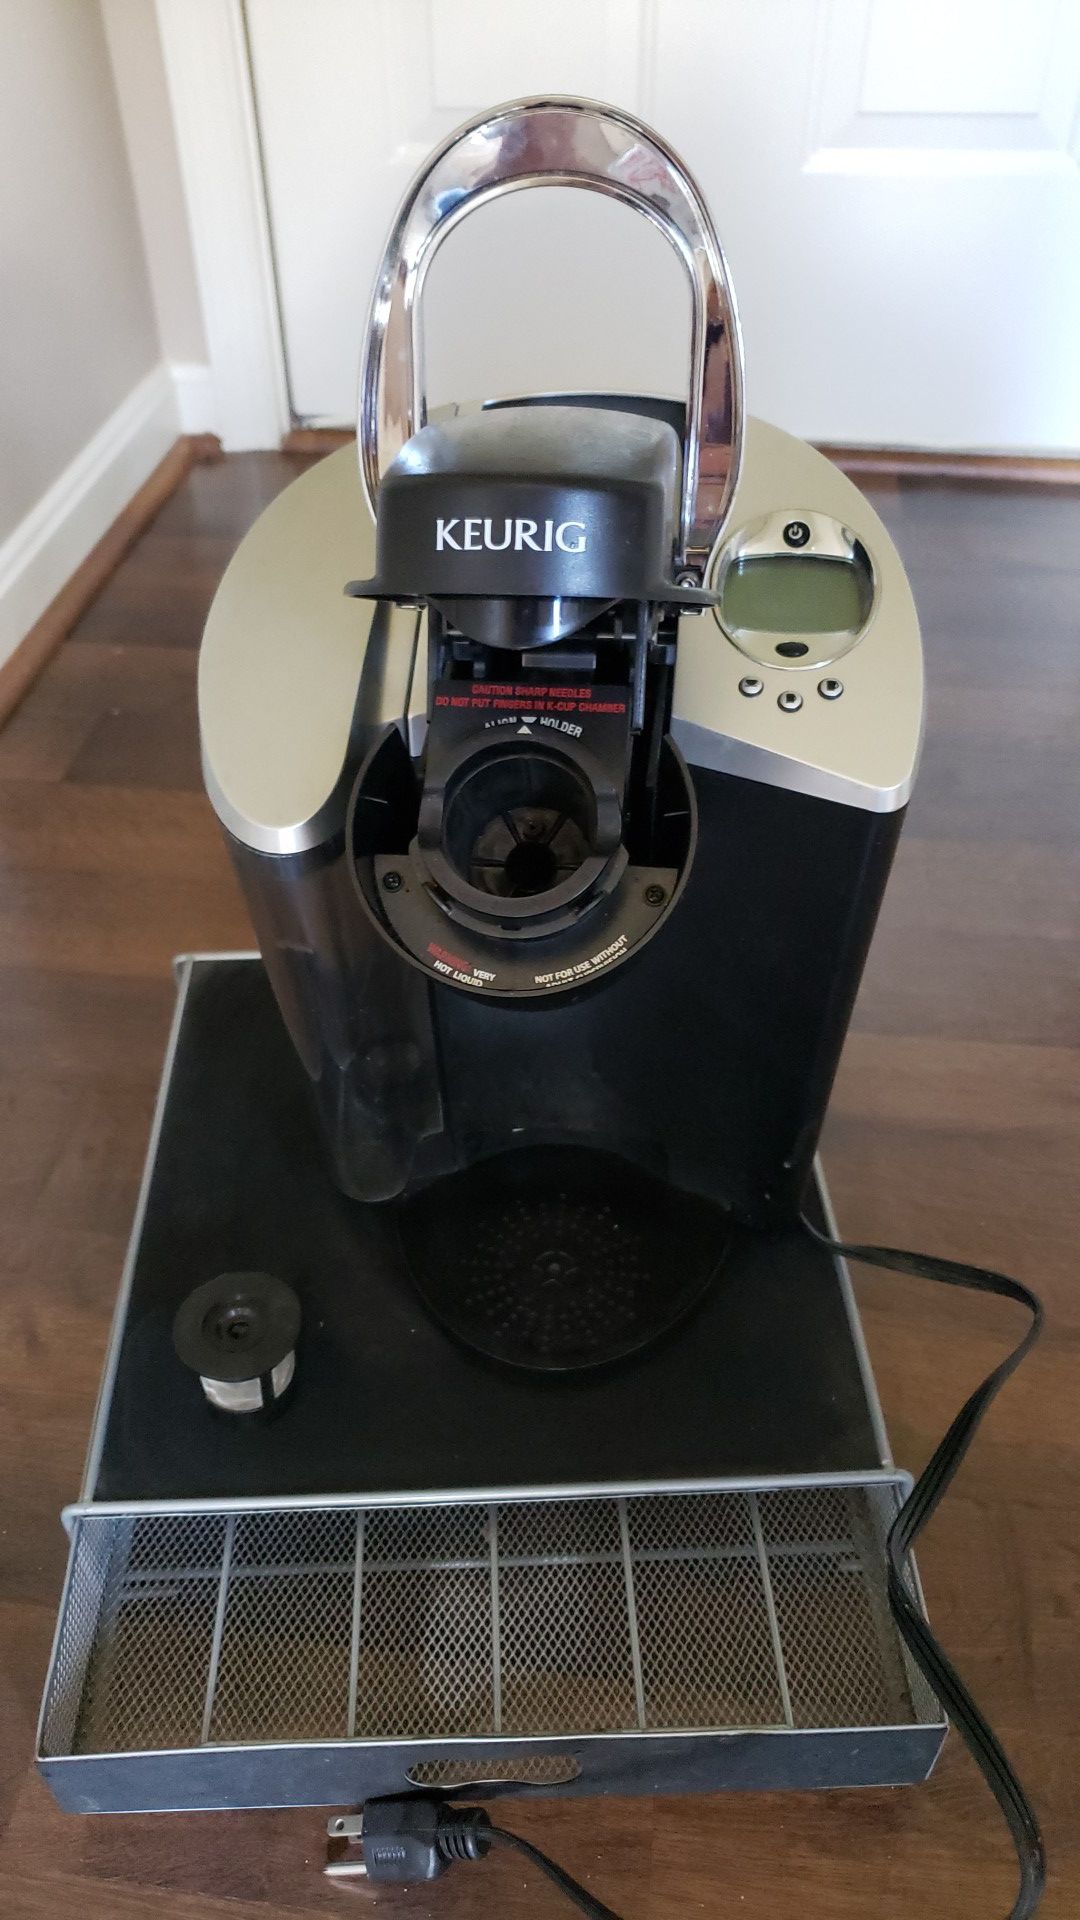 Keurig Coffee Maker w/ Accessories